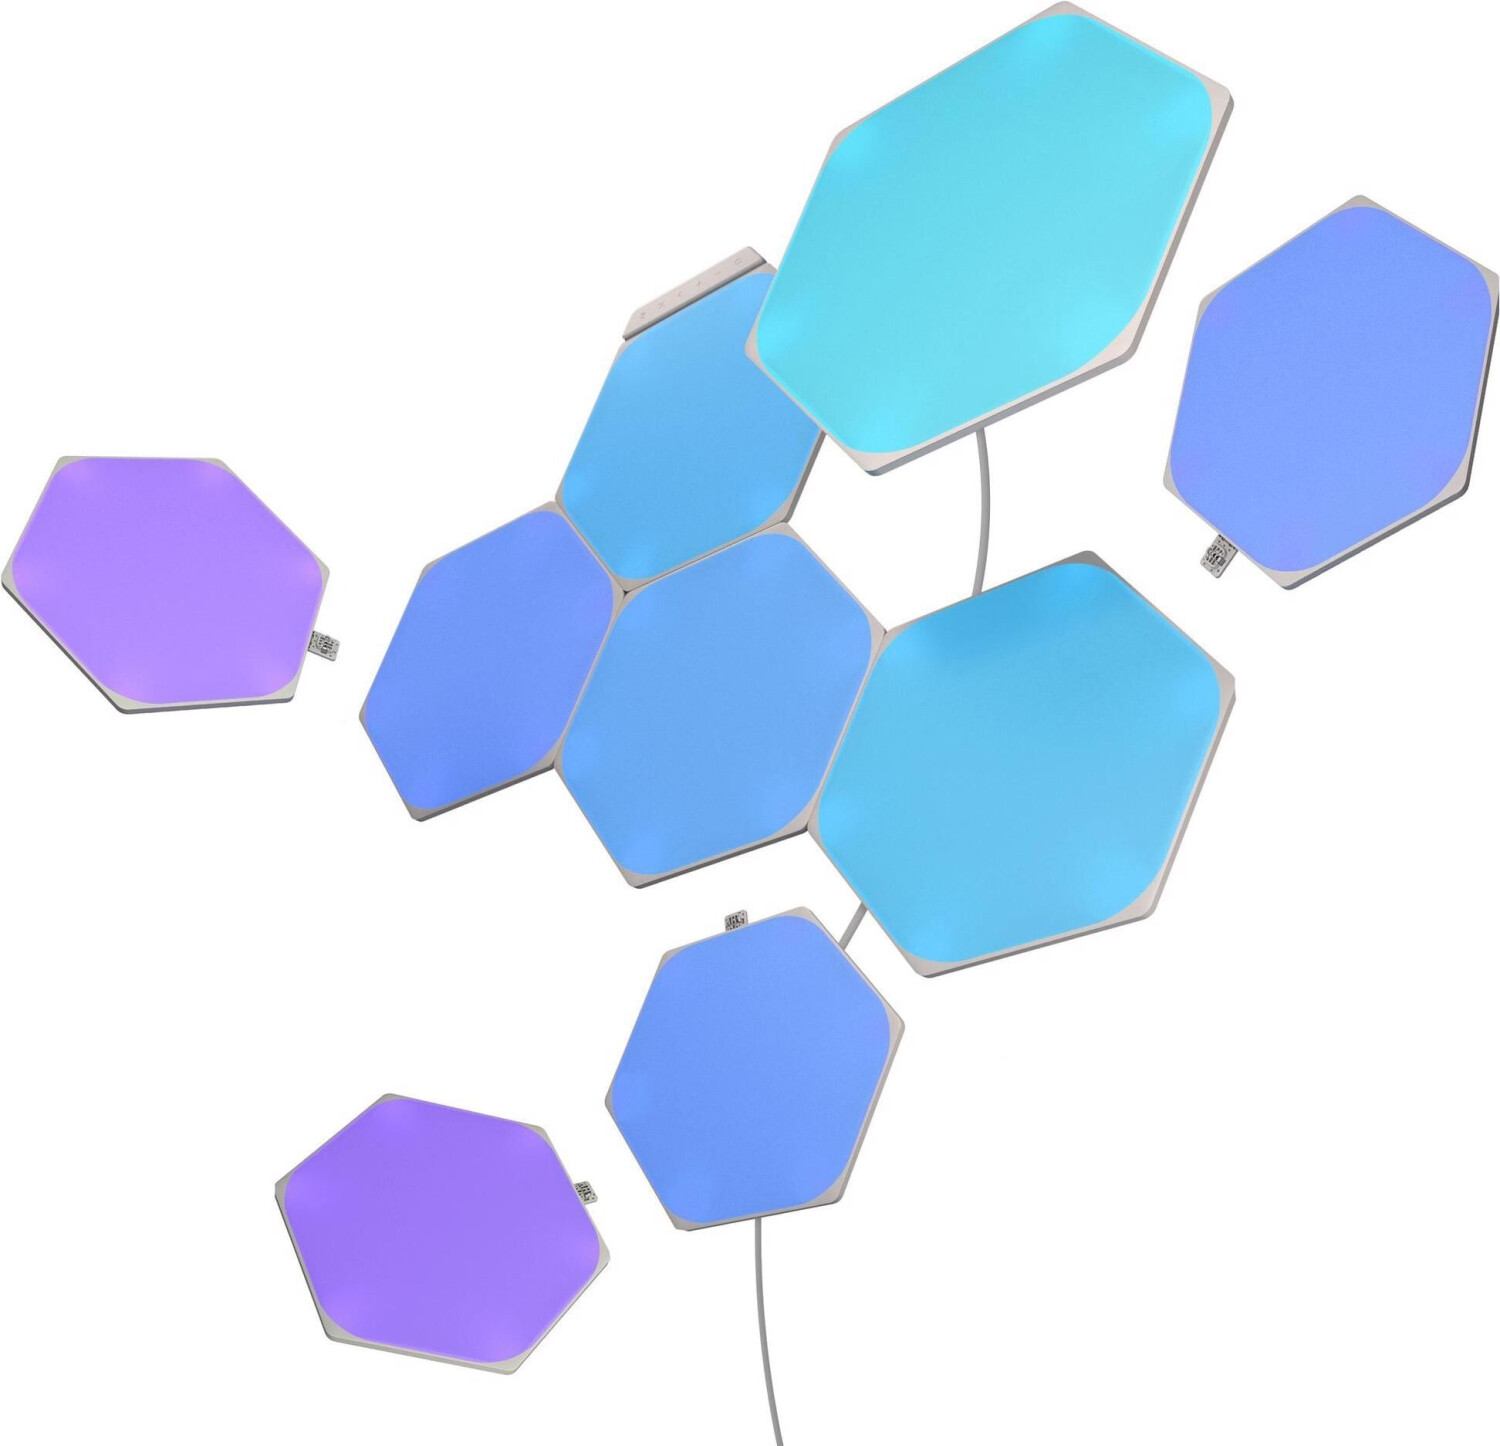 Preisvergleich Starter-Kit bei Hexagons 2024 Shapes 159,69 € Nanoleaf ab (9-teilig) (Februar | Preise)